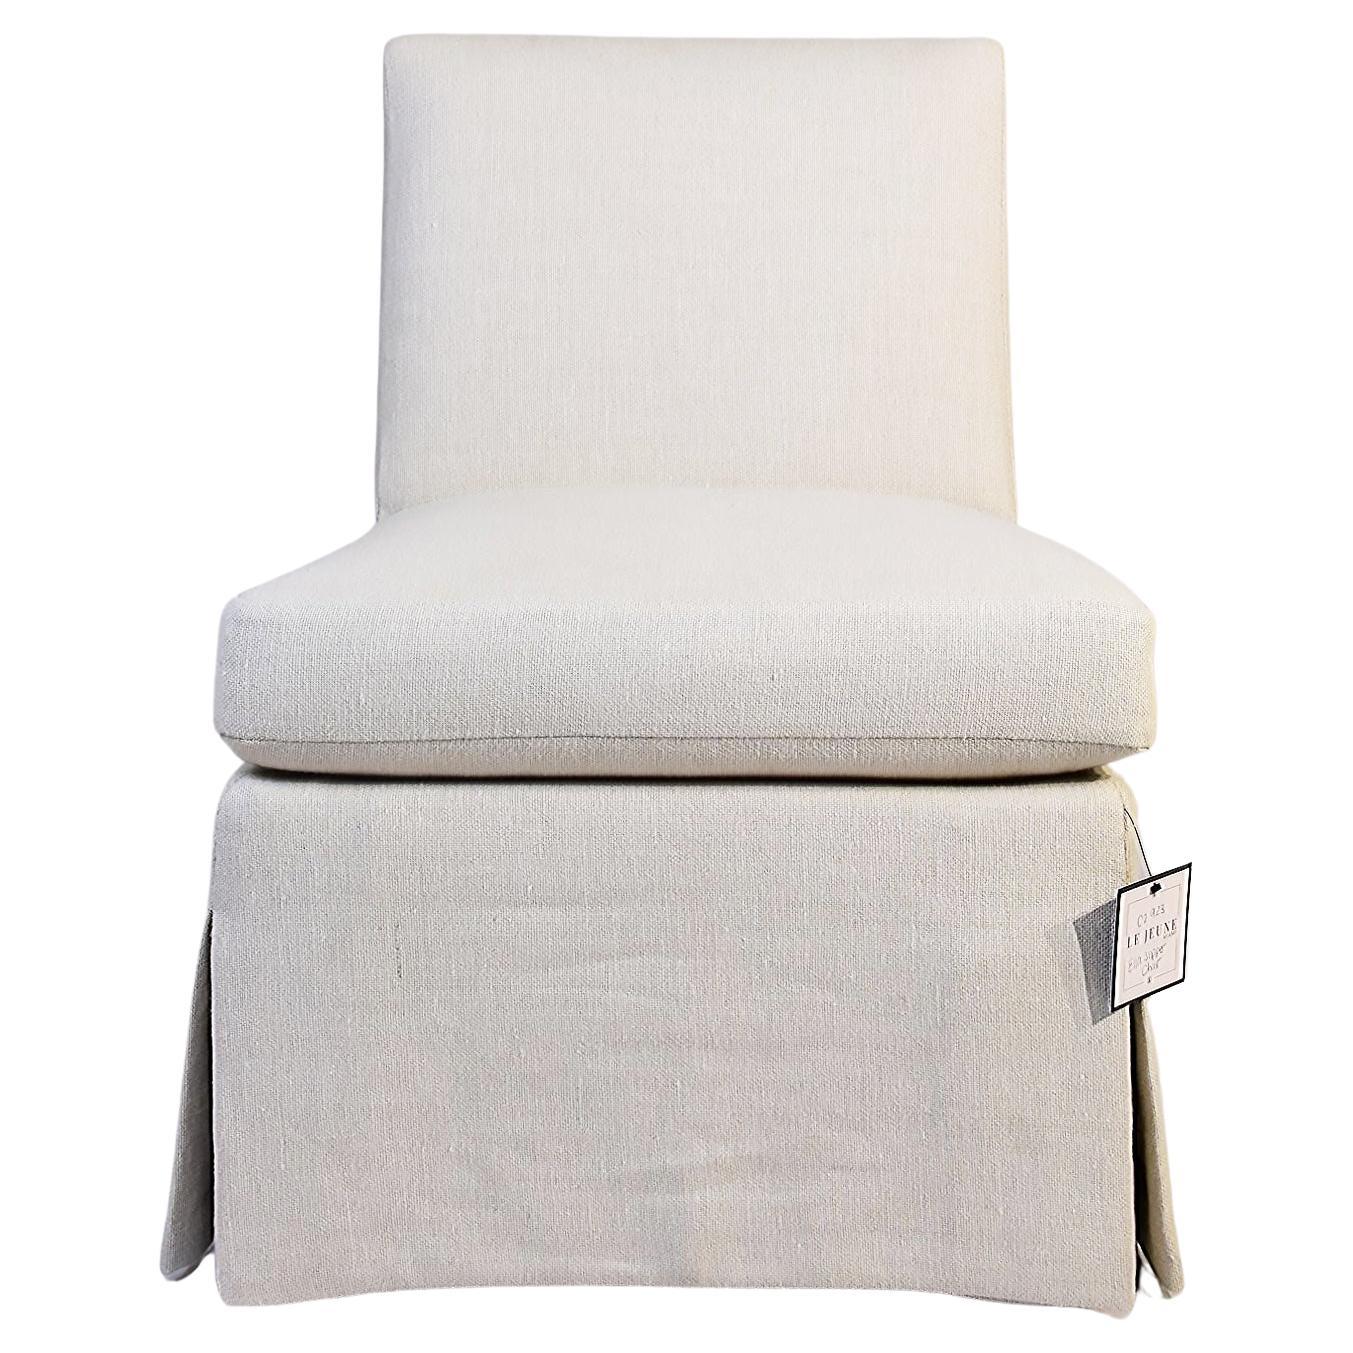 Le Jeune Upholstery Ella Slipper Chair Floor Sample in Ivory For Sale